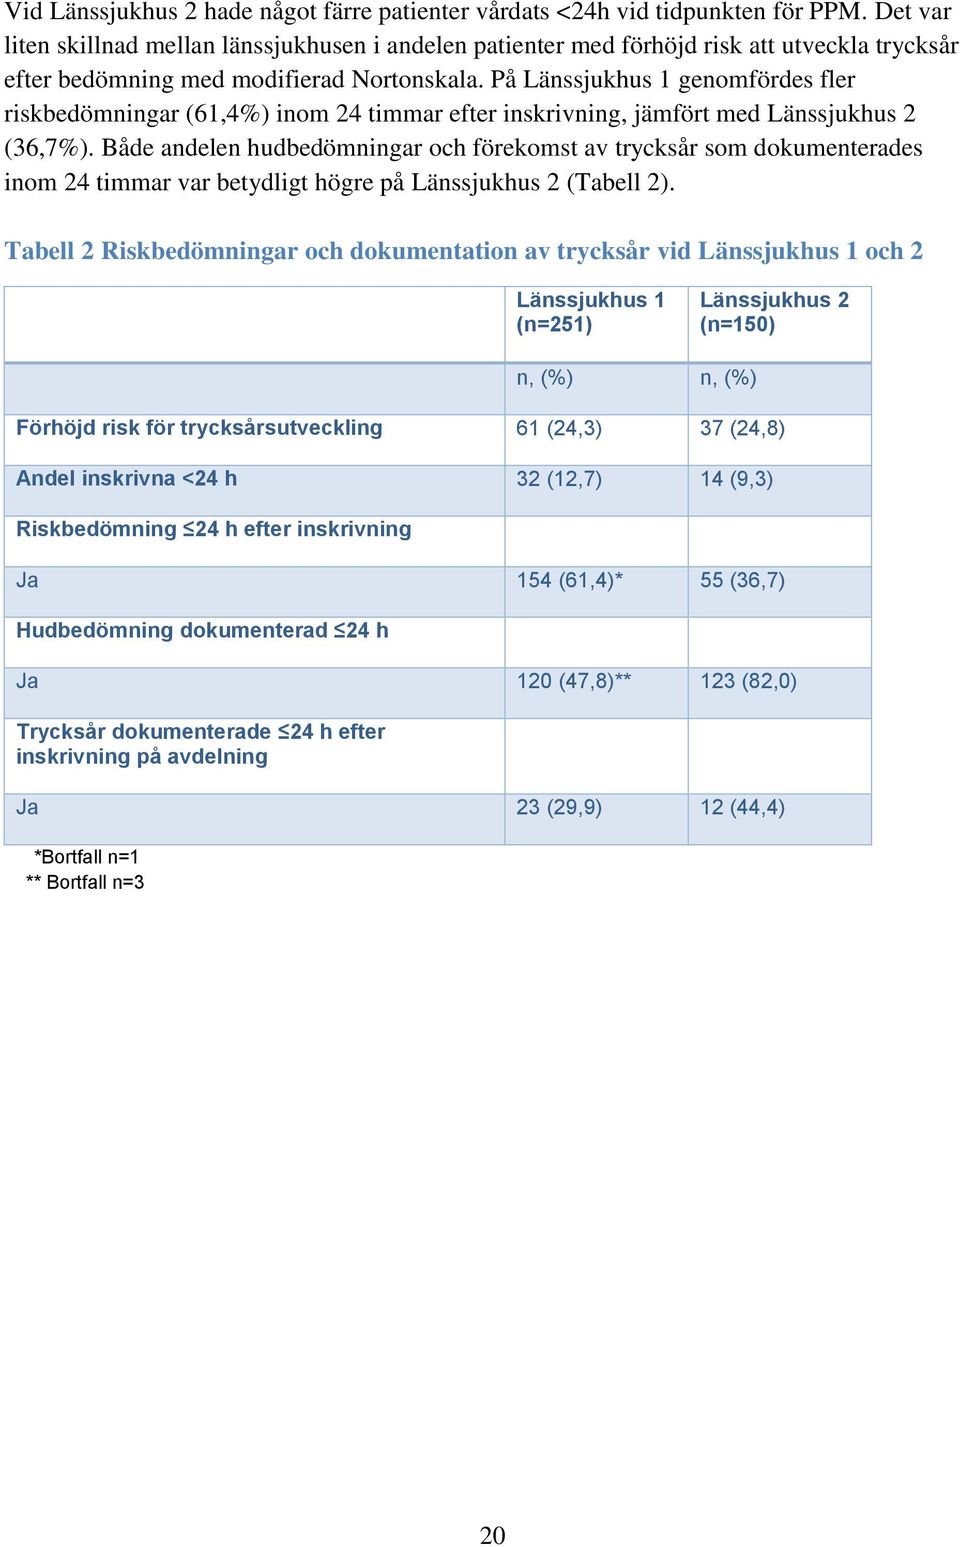 På Länssjukhus 1 genomfördes fler riskbedömningar (61,4%) inom 24 timmar efter inskrivning, jämfört med Länssjukhus 2 (36,7%).